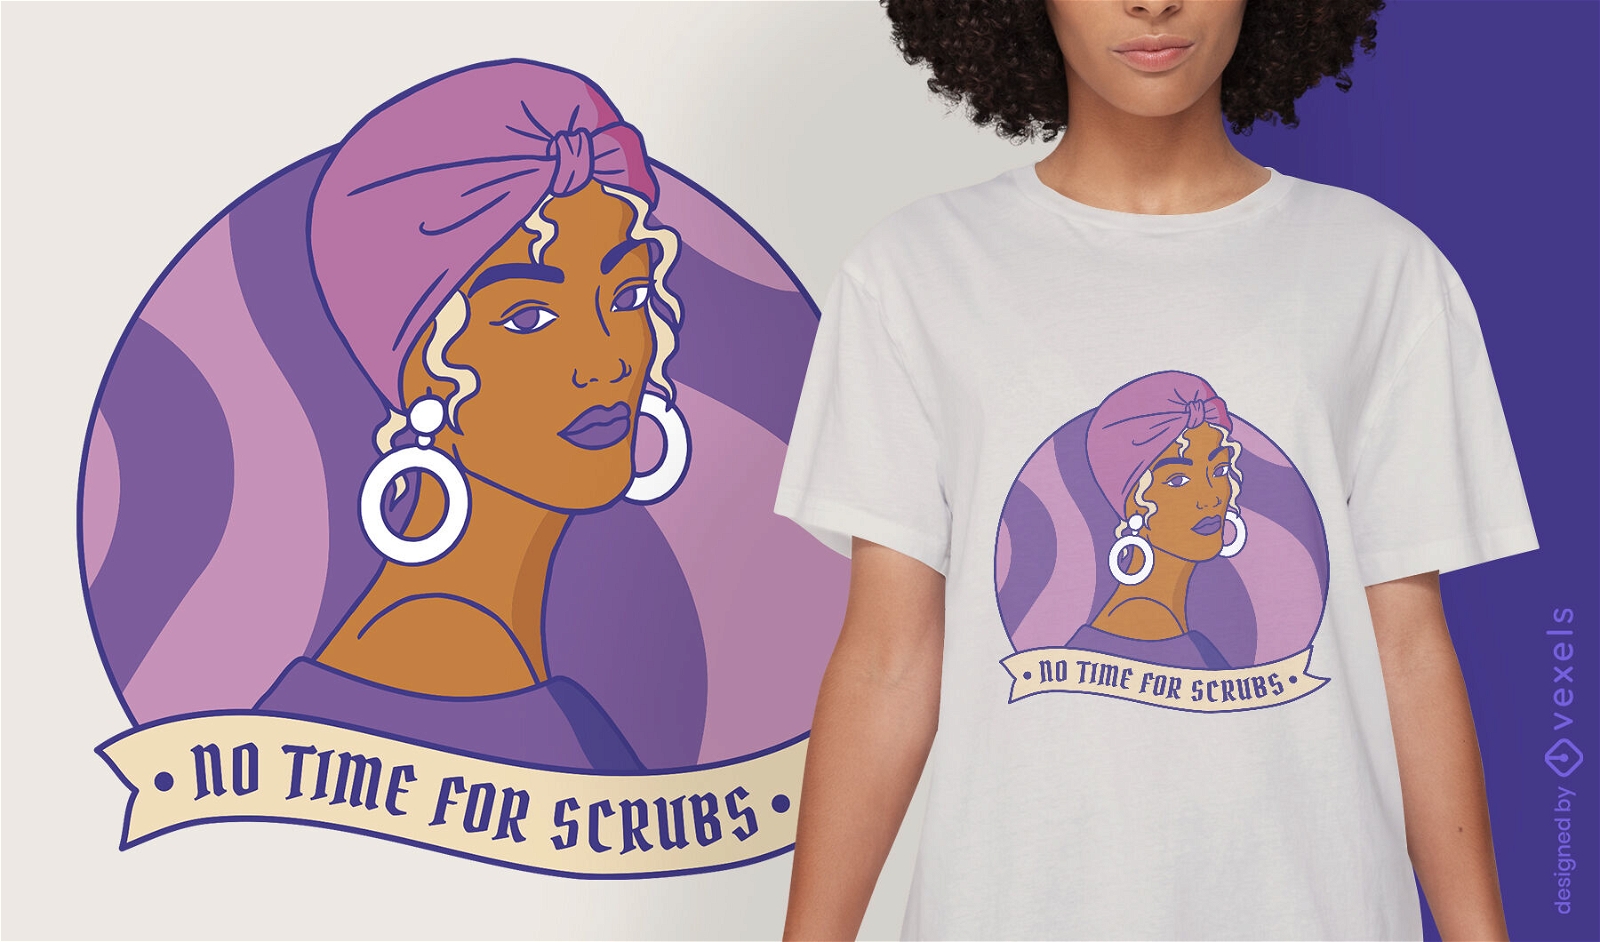 Modern strong woman t-shirt design